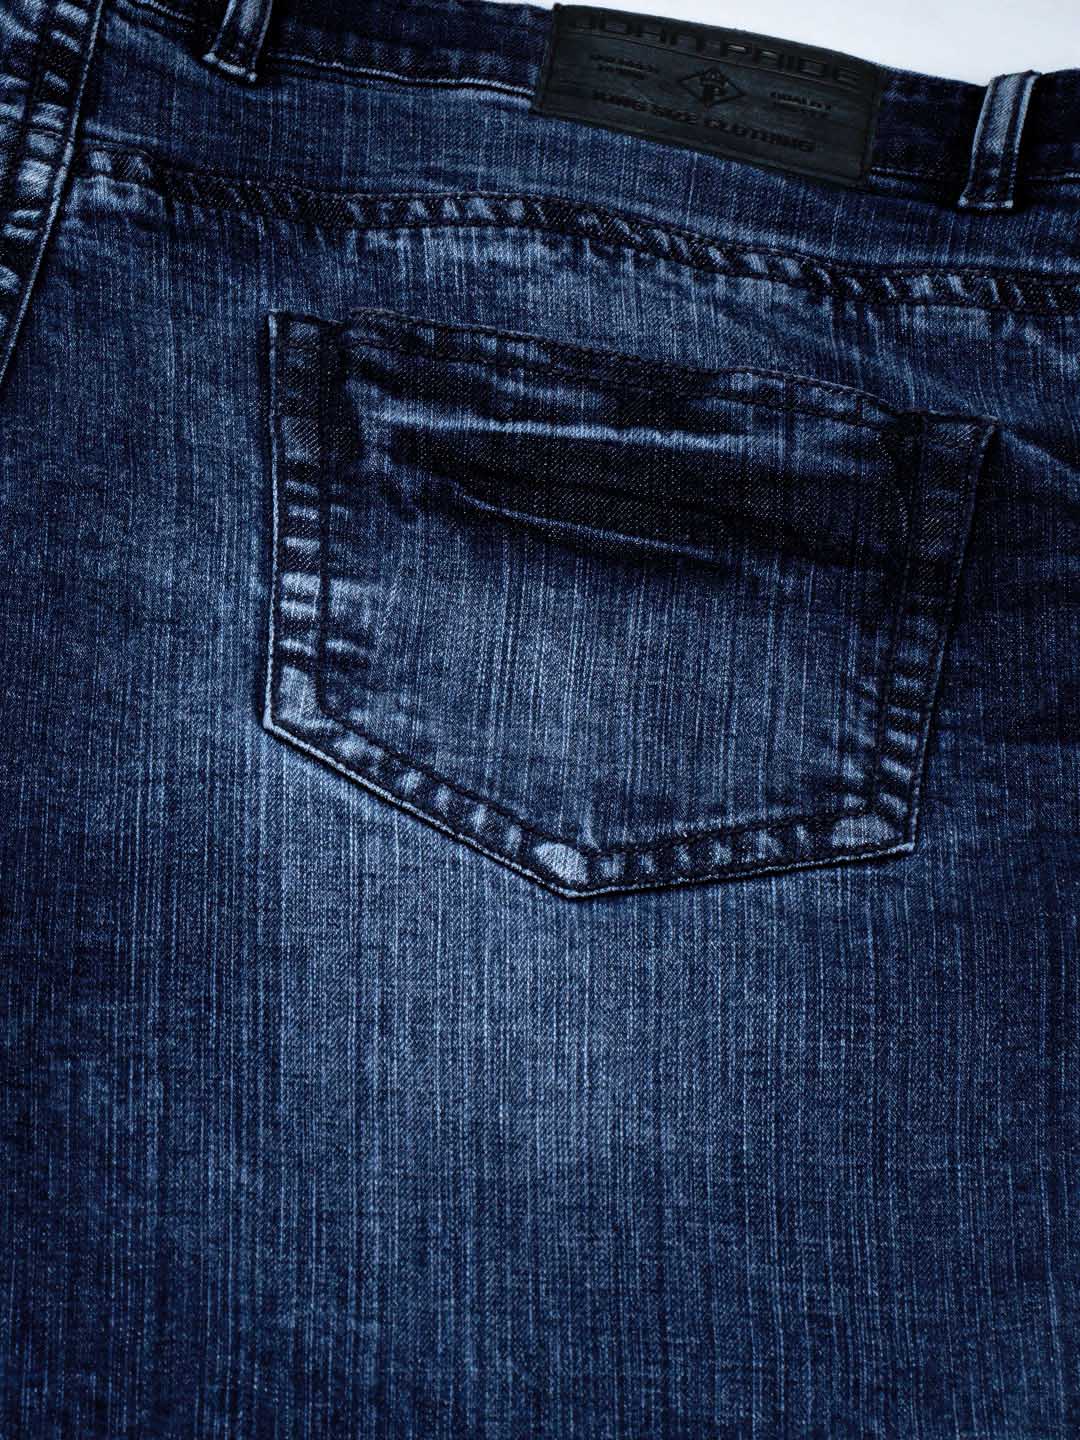 bottomwear/jeans/JPJ12121/jpj12121-5.jpg